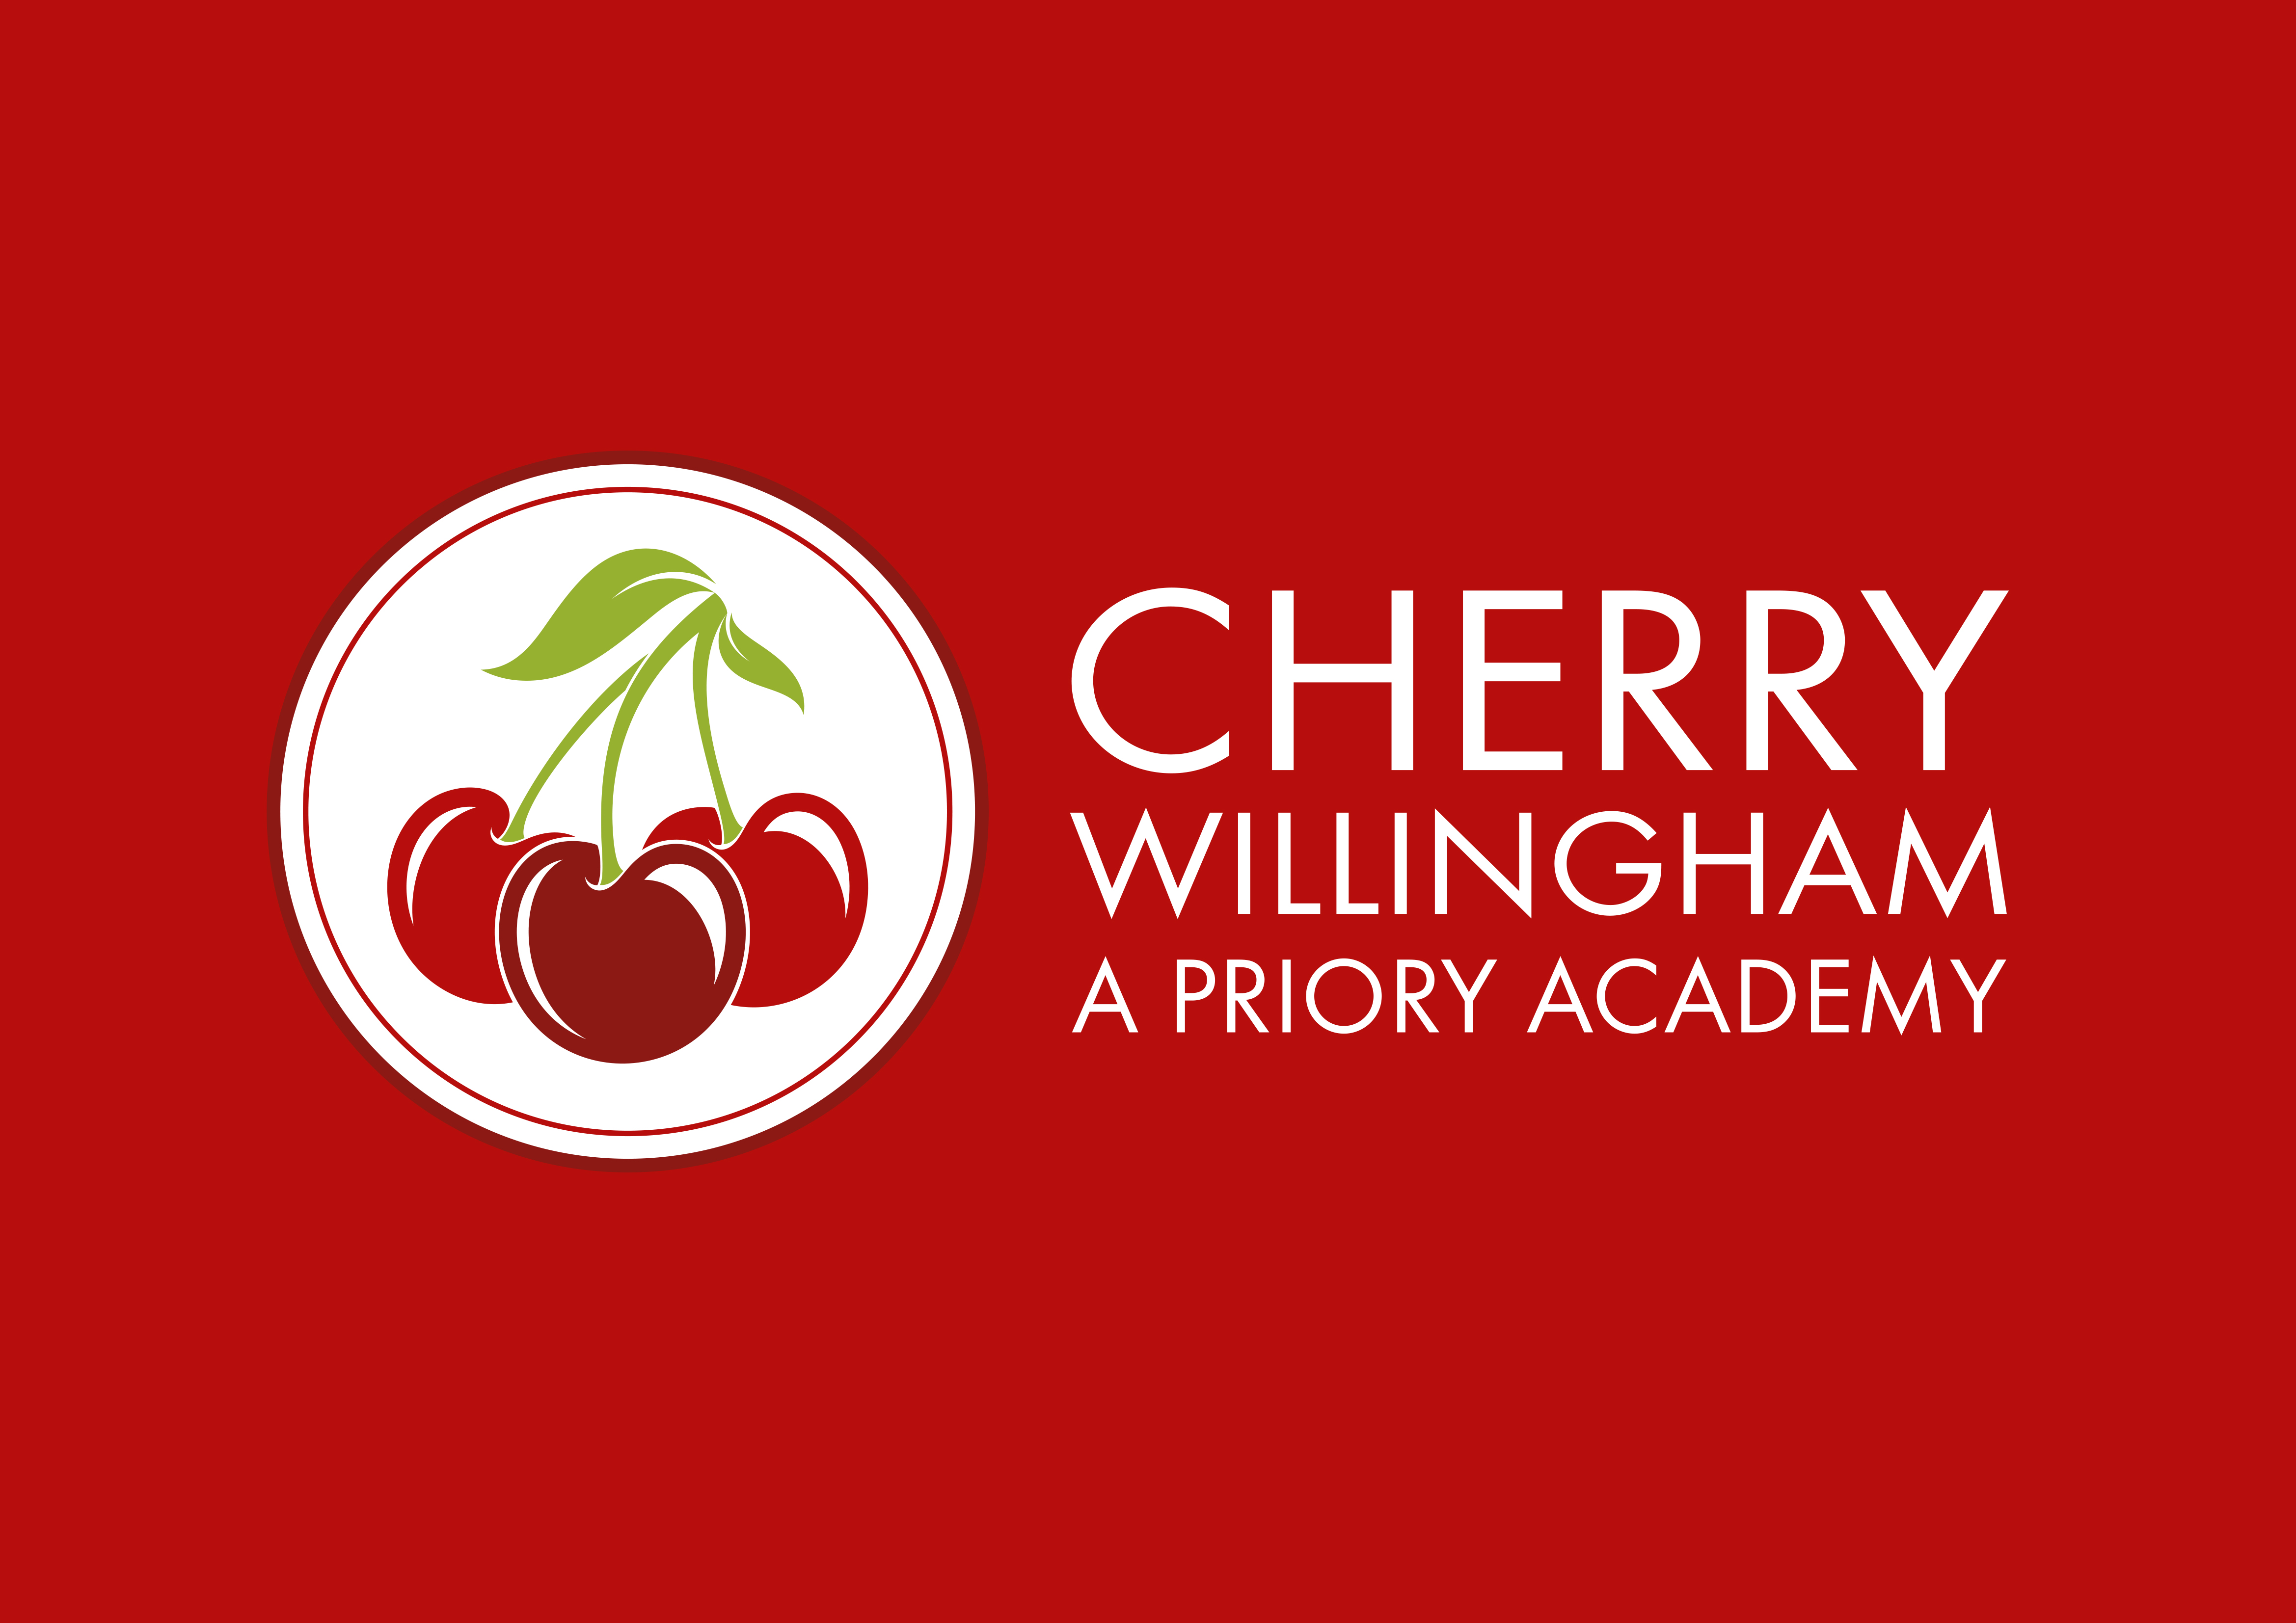 The logo of Cherry Willingham Primary Academy.